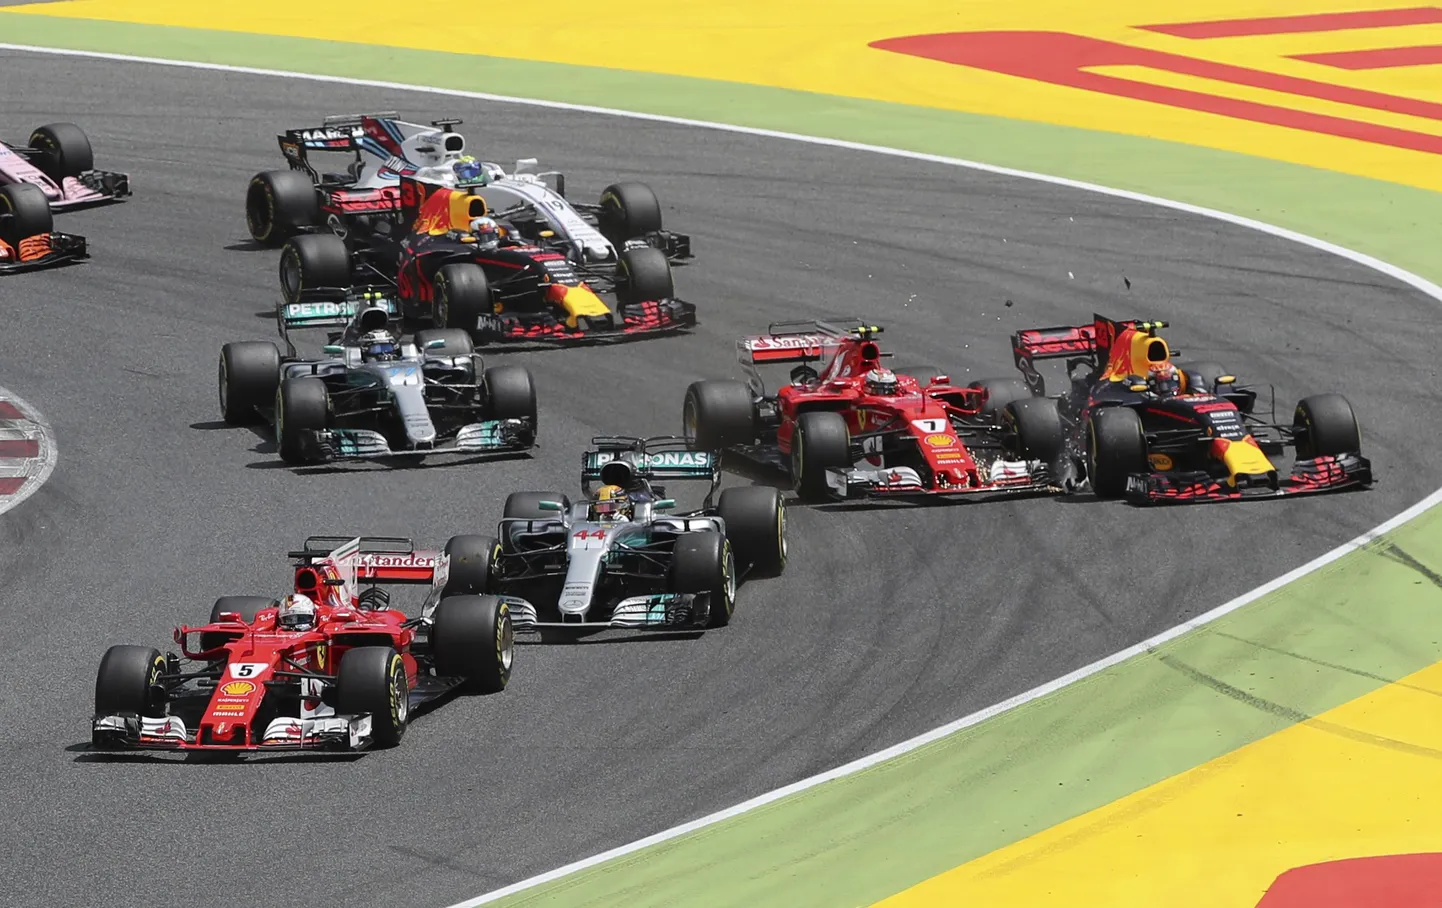 Kimi Räikköneni ja Max Verstappeni võistlus Hispaania Grand Prix'l lõppes avakurvis.